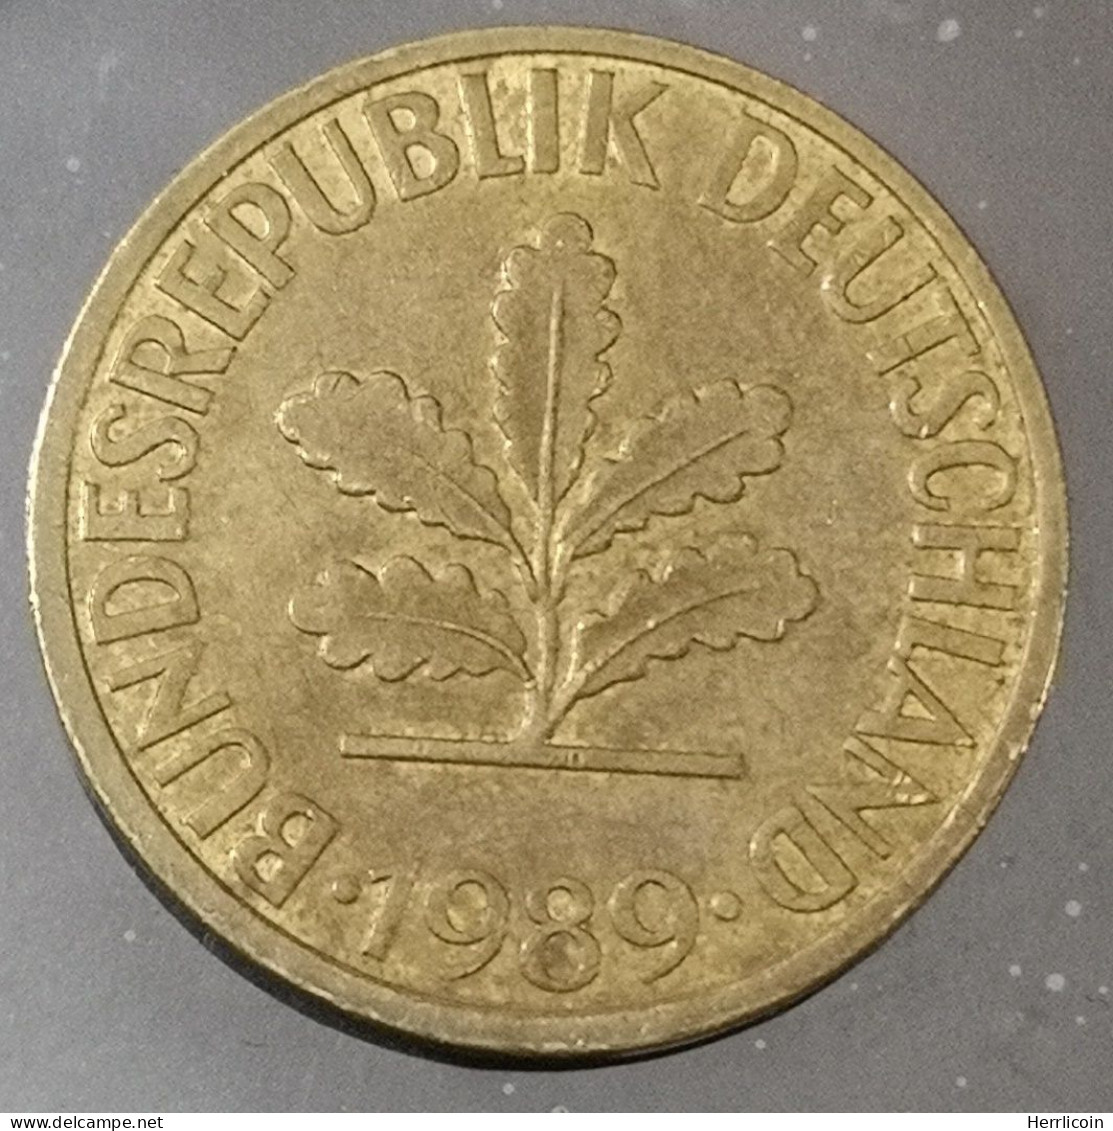 Monnaie Allemagne - 1989 D - 10 Pfennig - 10 Pfennig